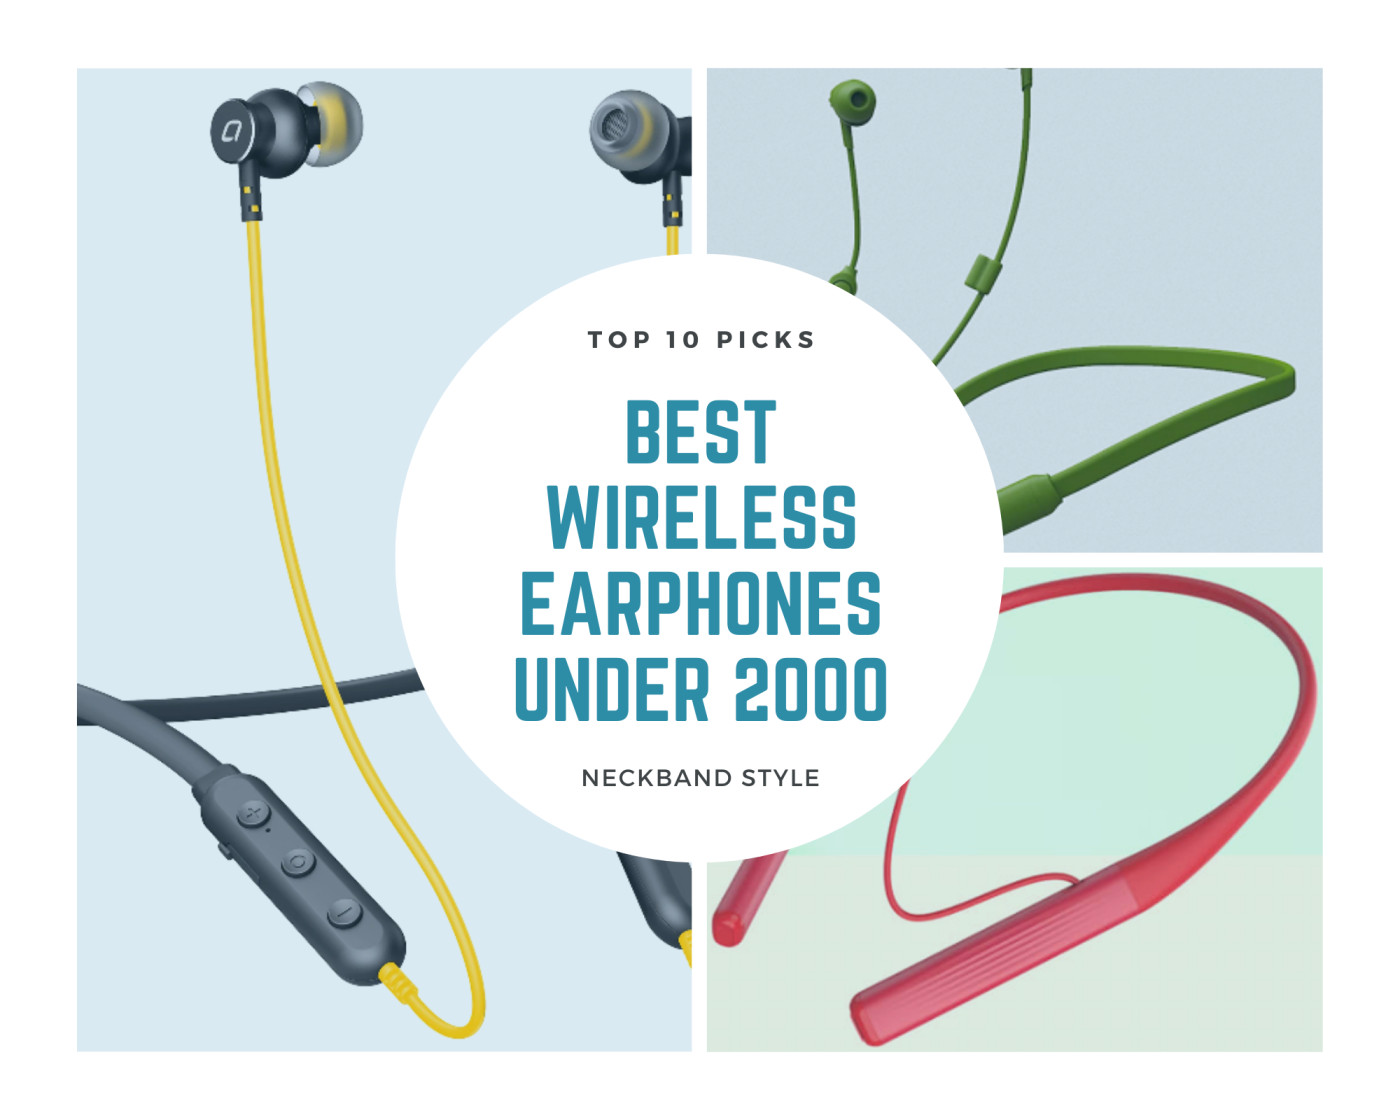 best wireless earphones under 2000 rupees